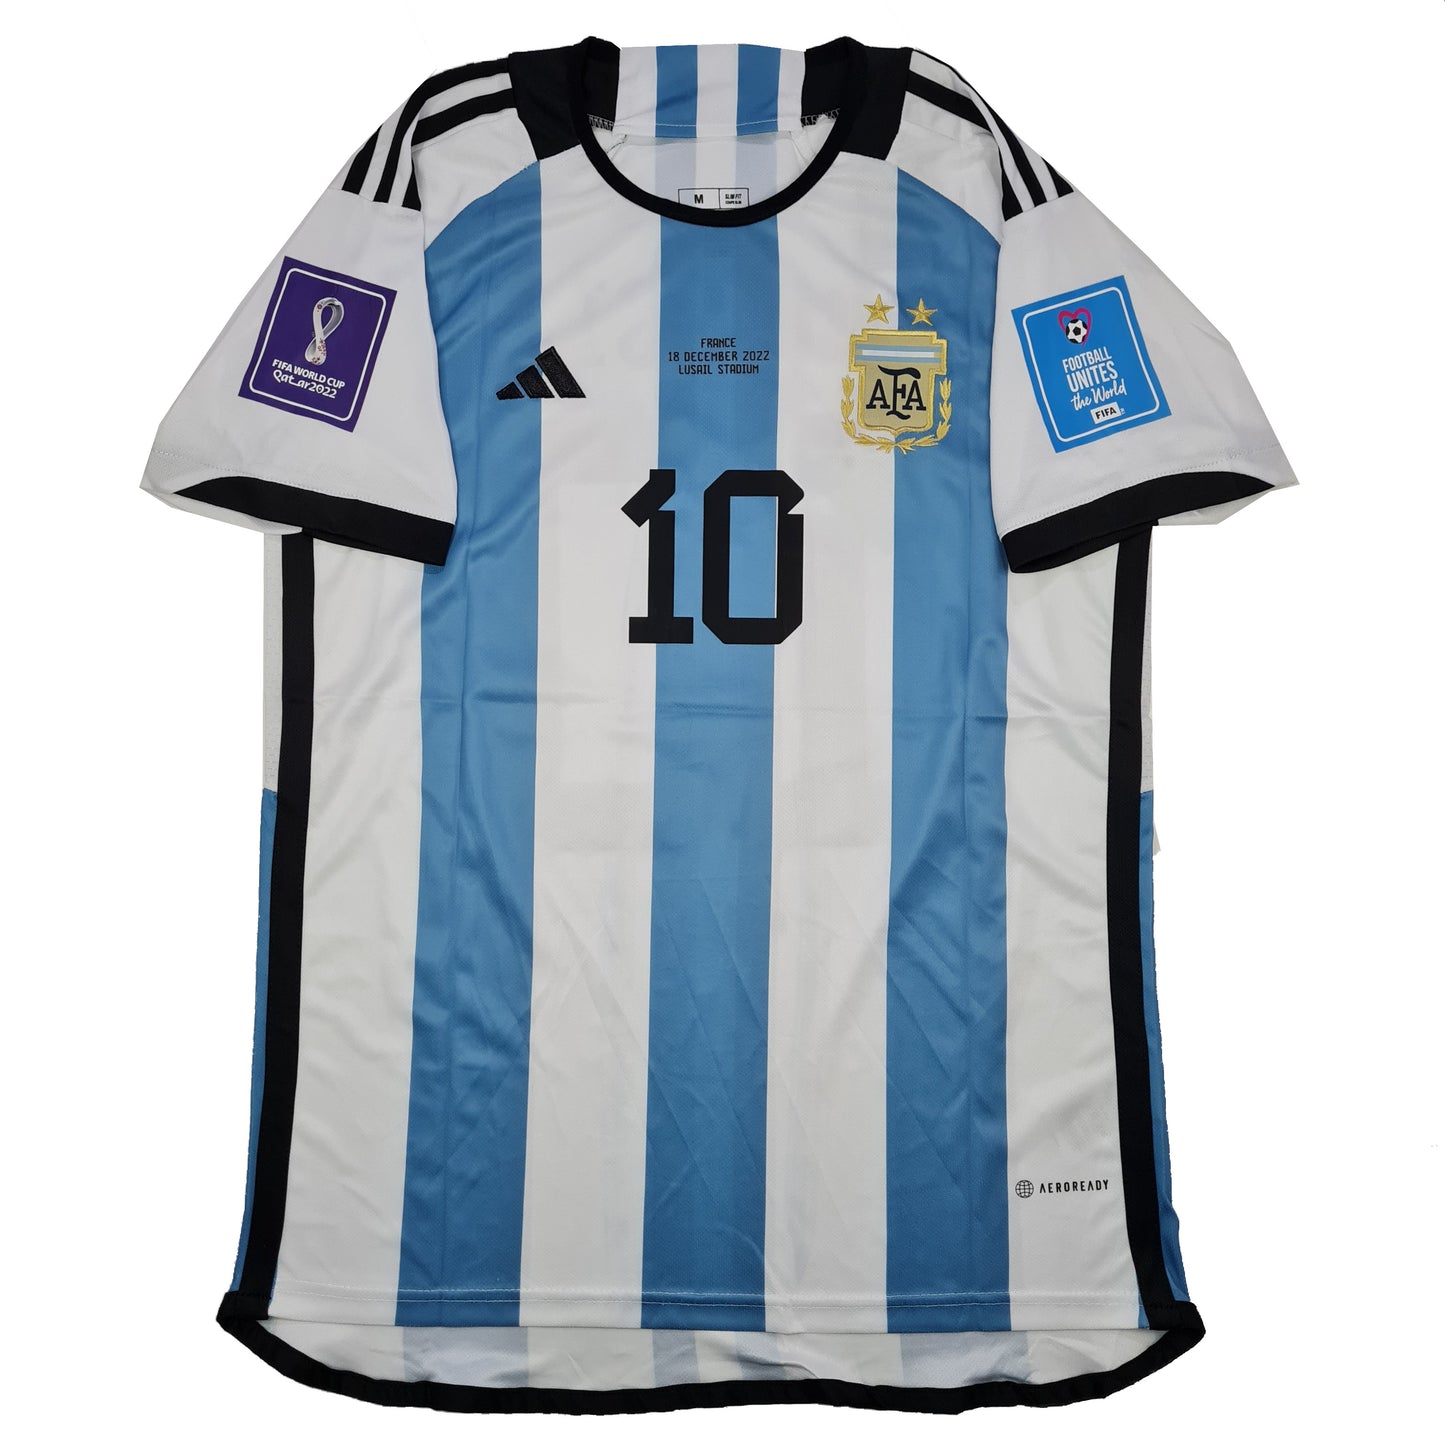 Argentina Titular 2022 - Final Copa del Mundo ✈️